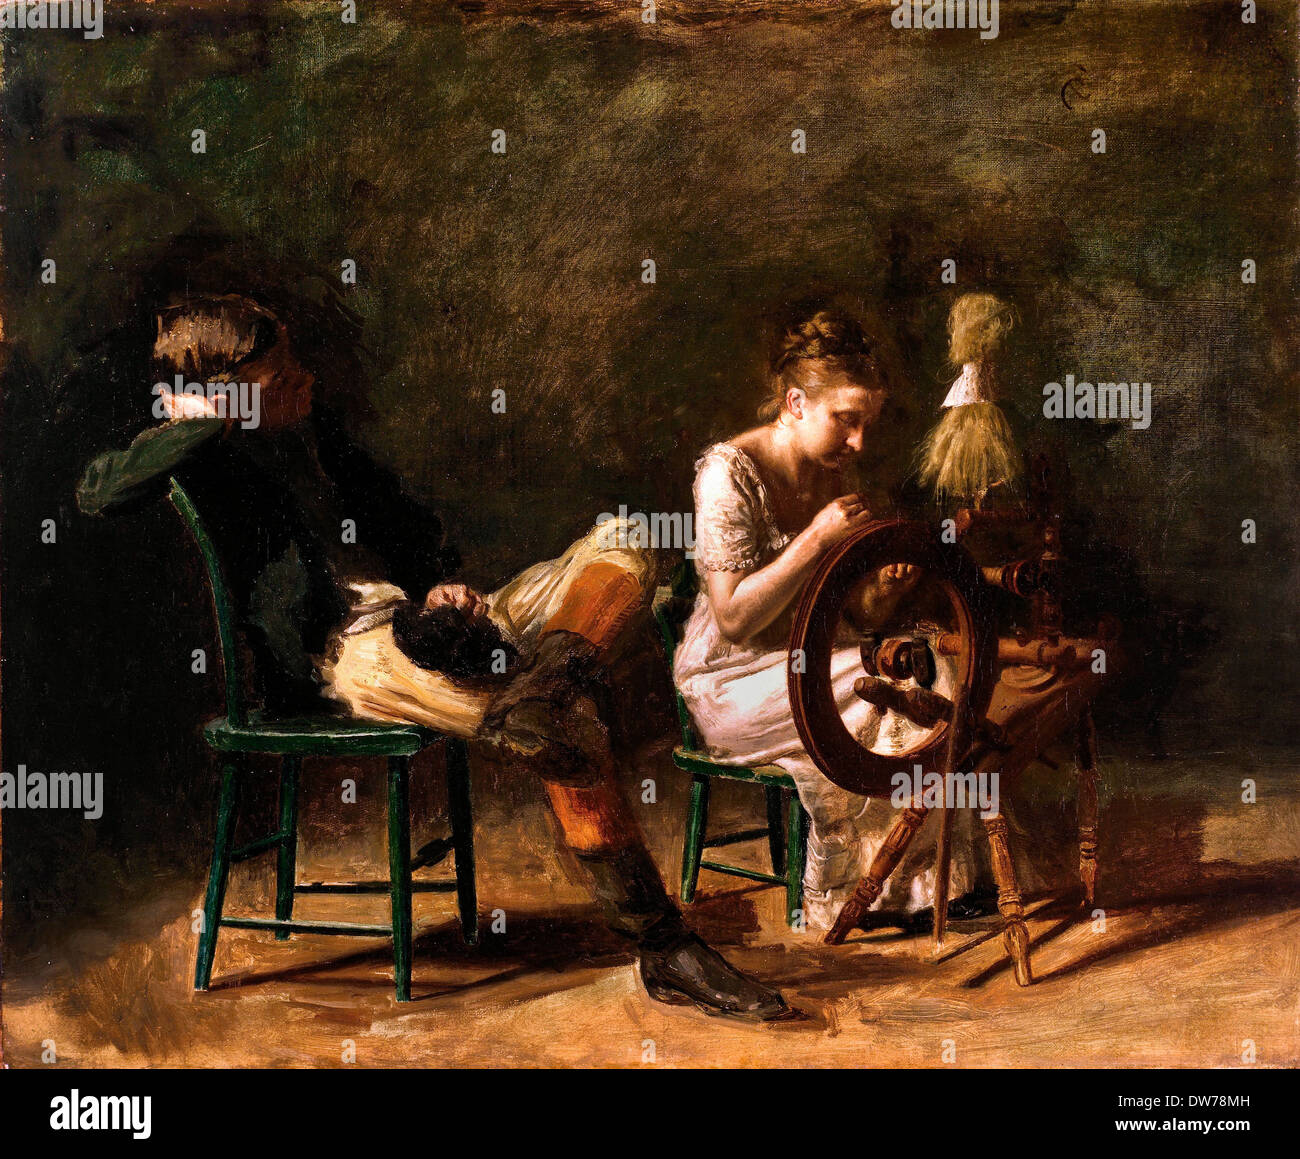 Thomas Eakins, il corteggiamento. Circa 1878. Olio su tela. Fine Arts Museum di San Francisco, Stati Uniti d'America. Foto Stock